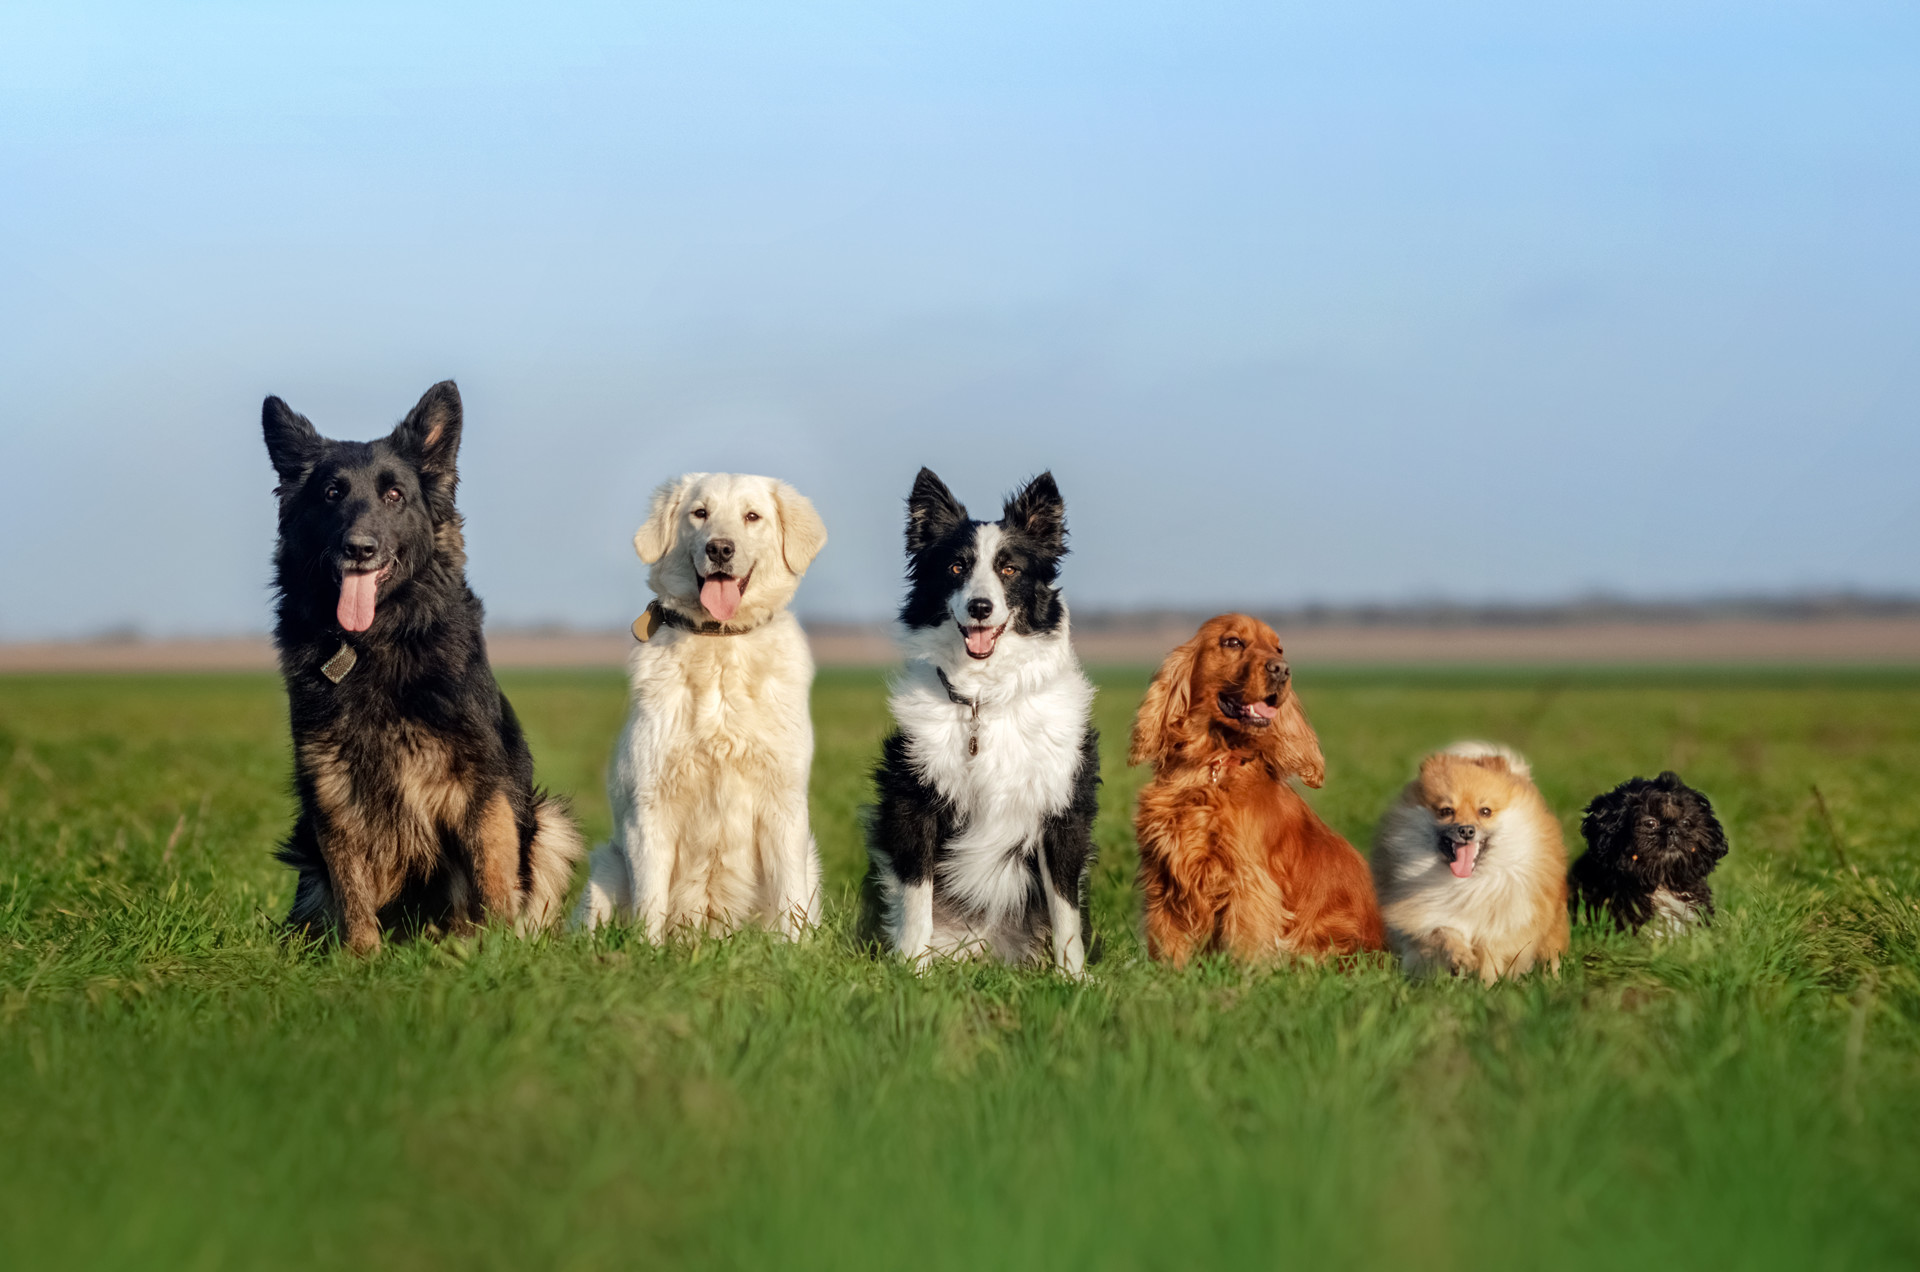 Dogs sitting in a field